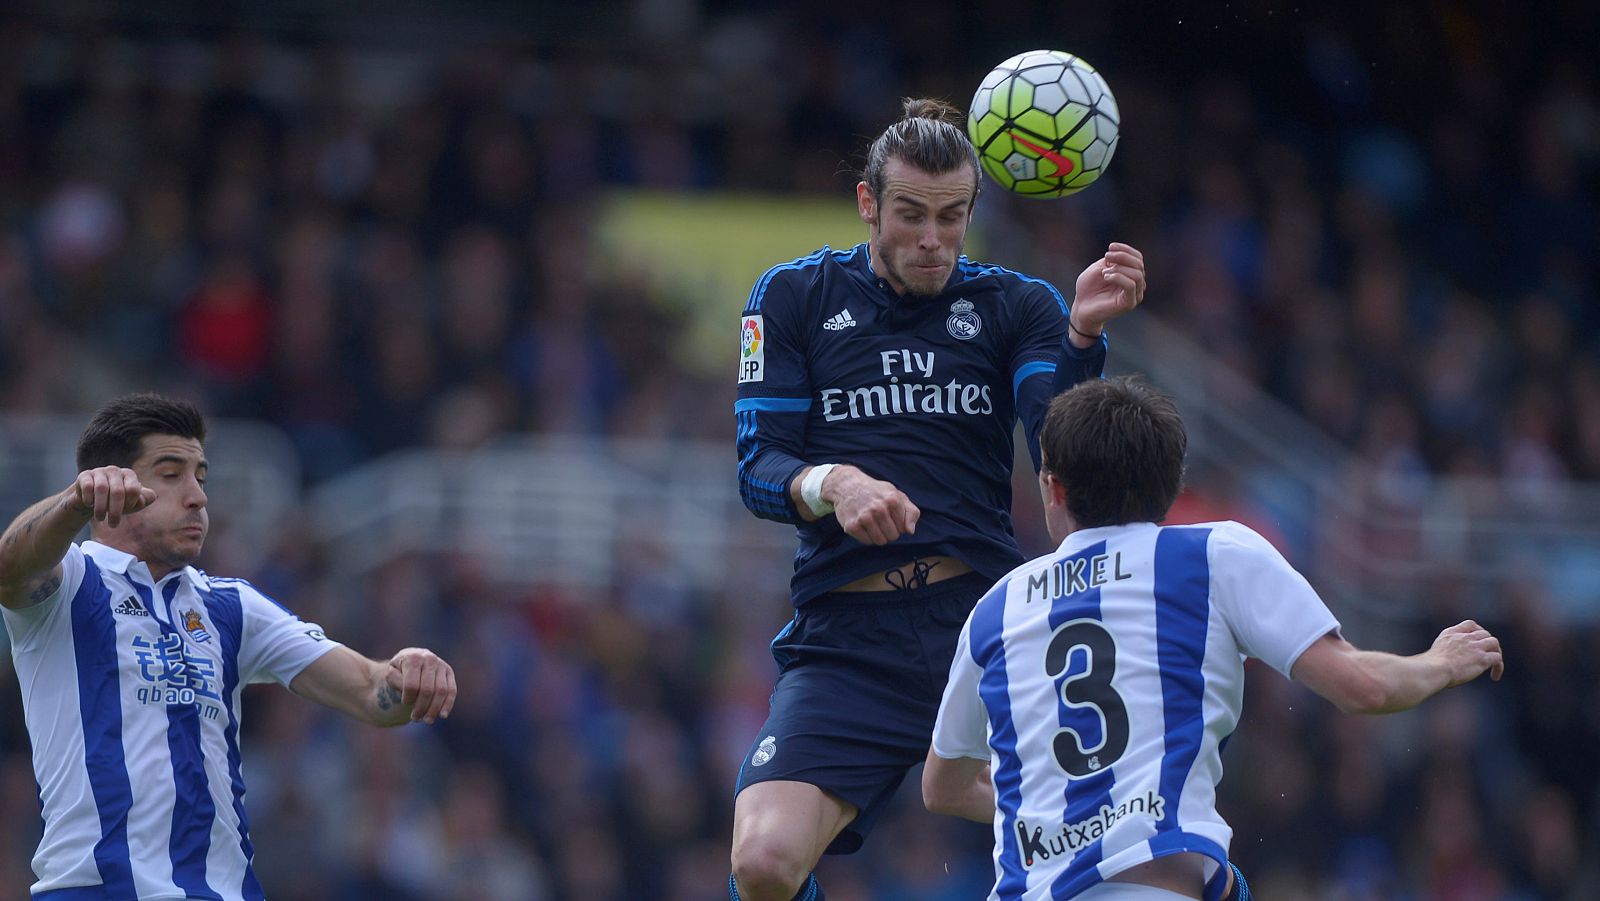 Gareth Bale remata de cabeza ante los defensores donostiarras